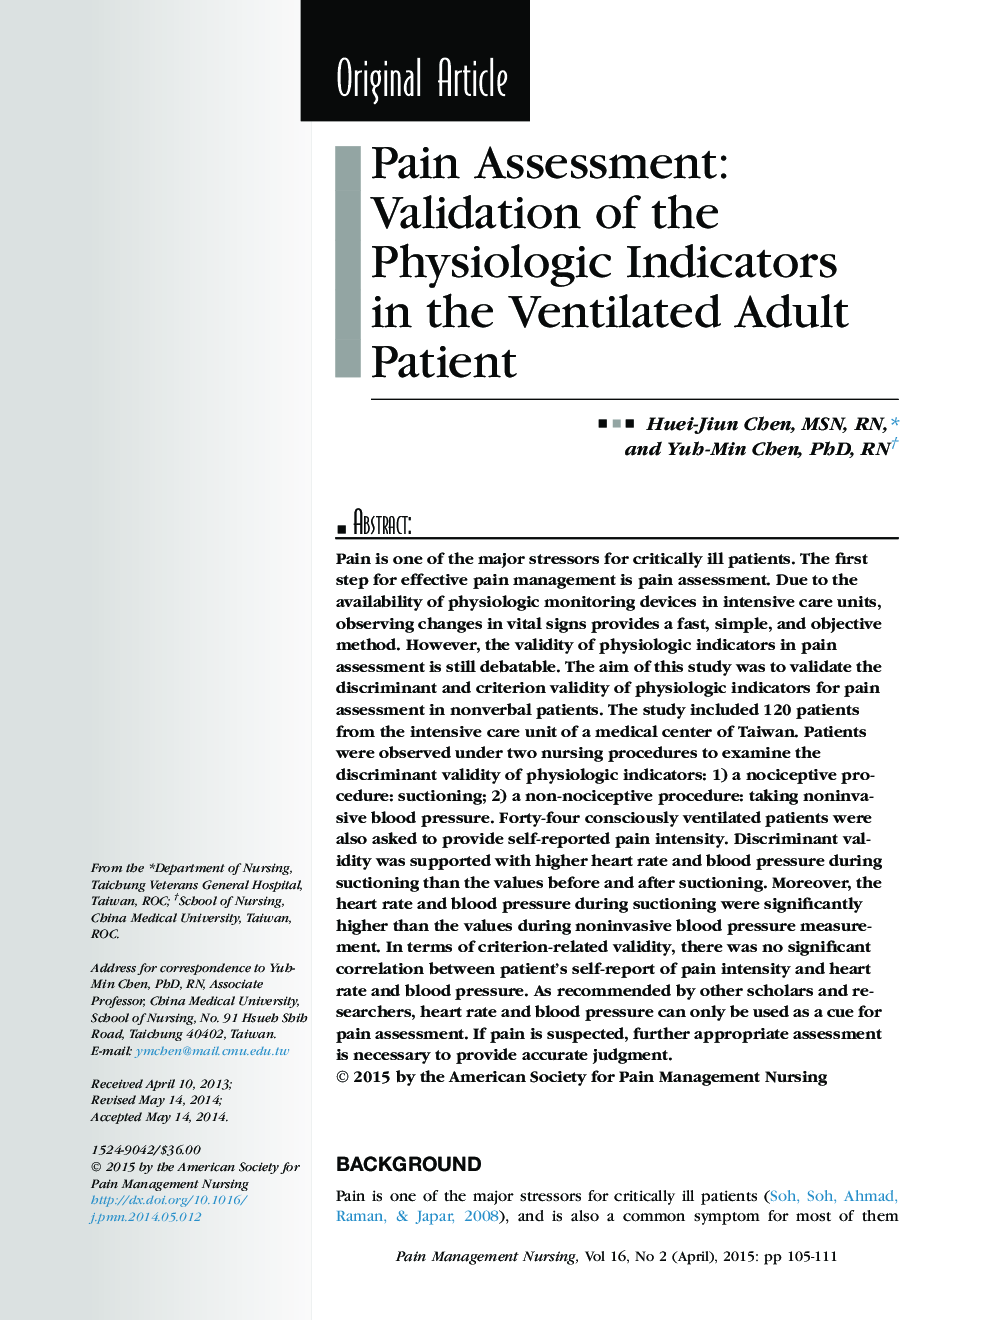 ارزیابی درد: اعتبار شاخص های فیزیولوژیکی در بیمار بزرگسال با تهویه مصنوعی